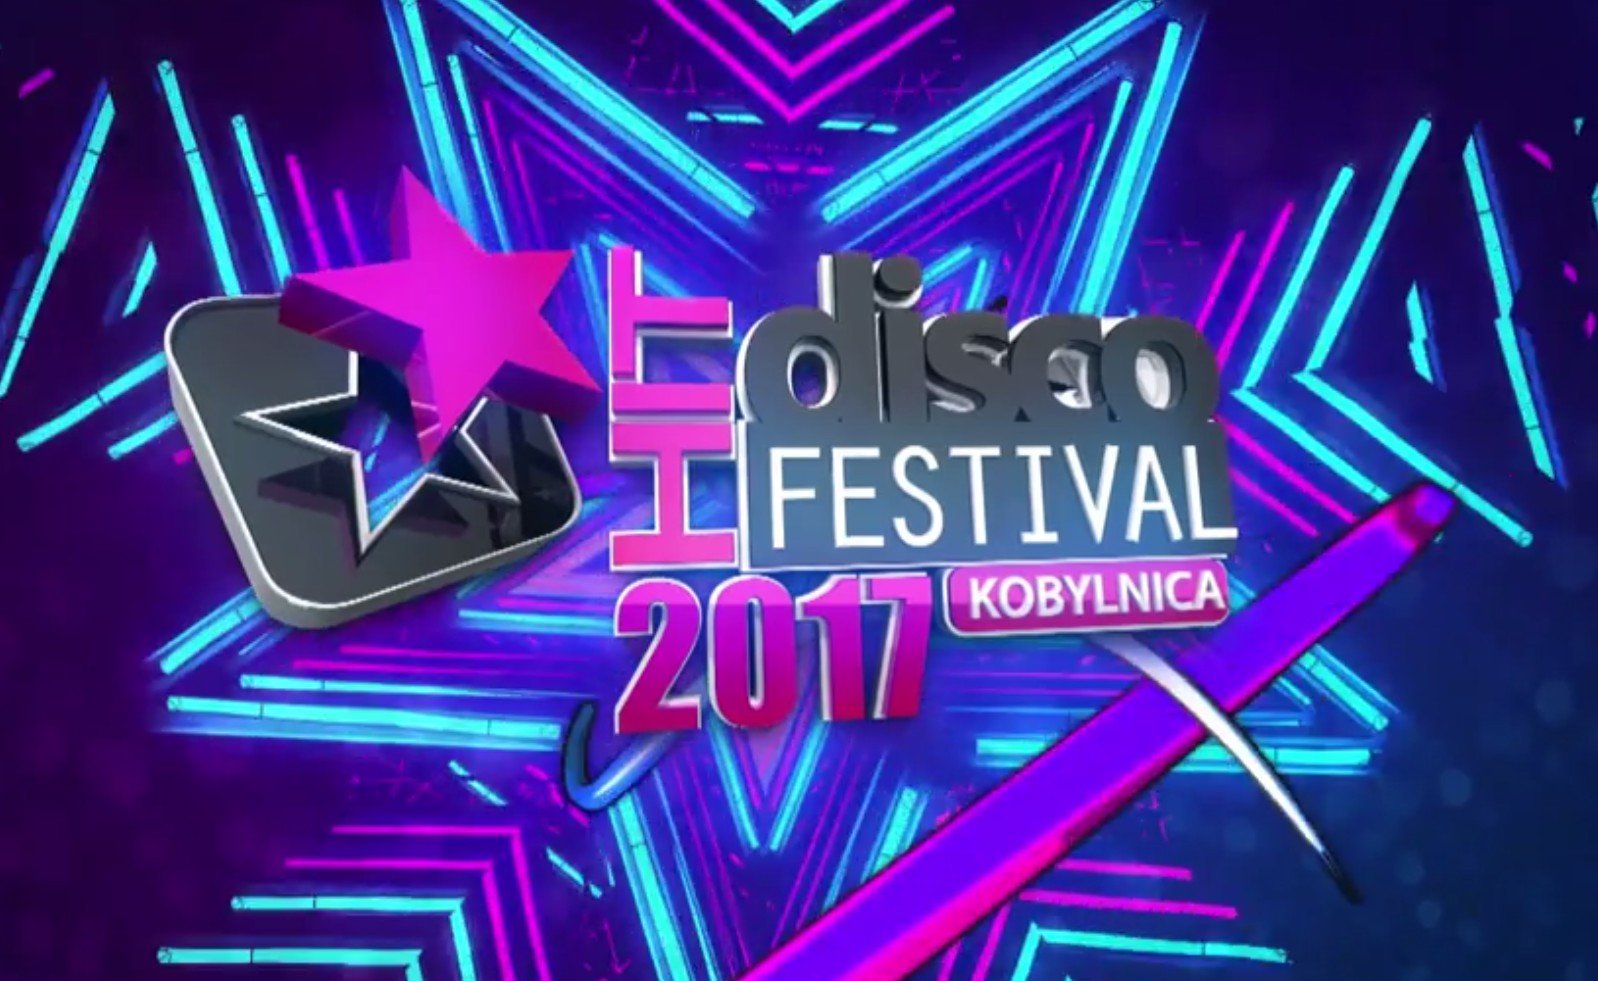 Bardzo dobre wyniki Disco Hit Festival Kobylnica 2017! Kobylnica wygrała z "Lato z Radiem" w Kołobrzegu!